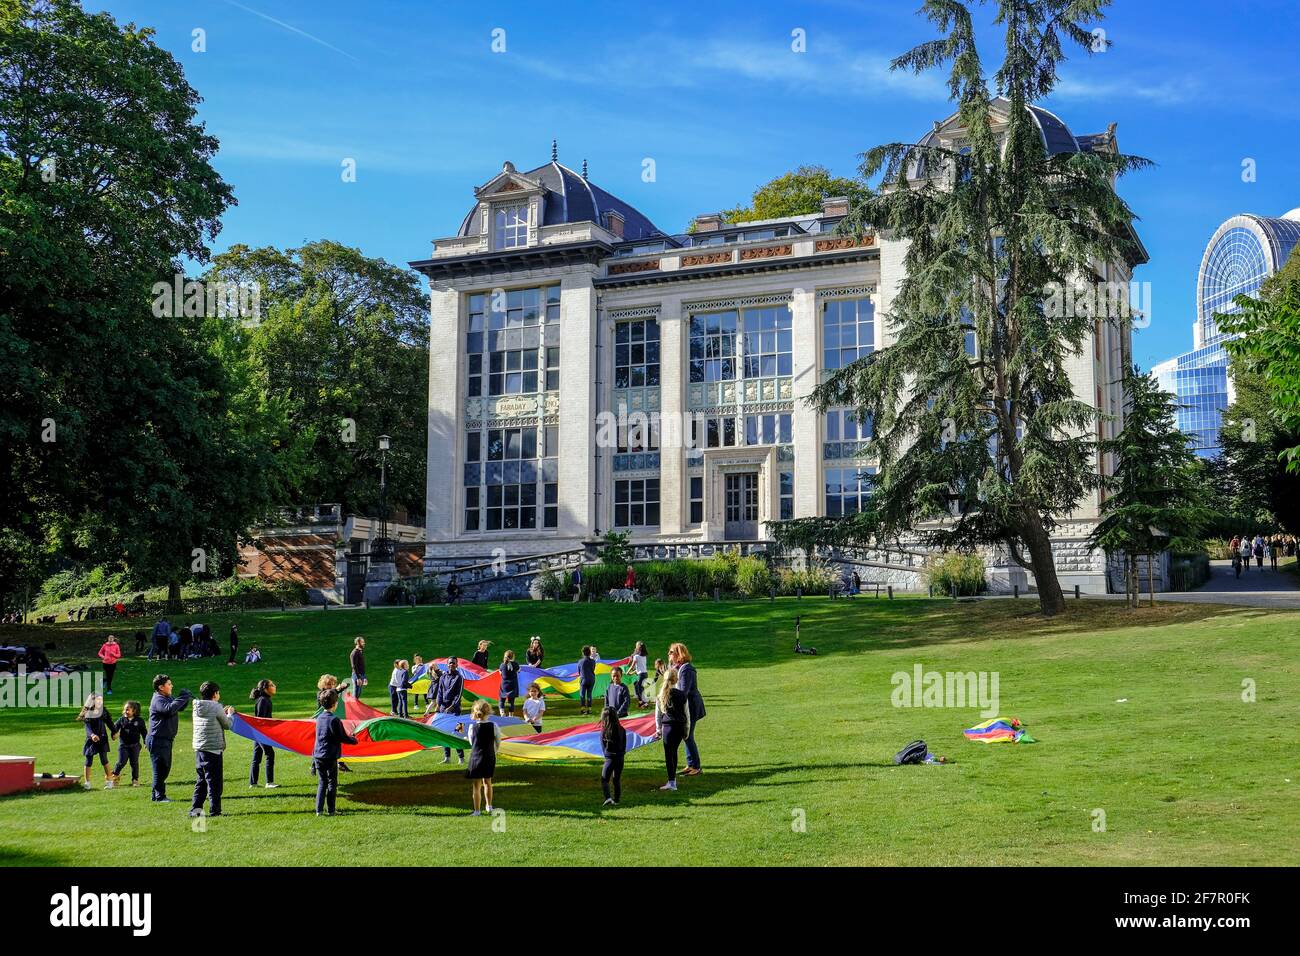 20.09.2019, Bruessel, Belgien - Kinder spielen mit grossen bunten Tuechern auf einer Wiese im Park Leopold nahe dem Gebaeude des Europaeischen Parlame Stock Photo